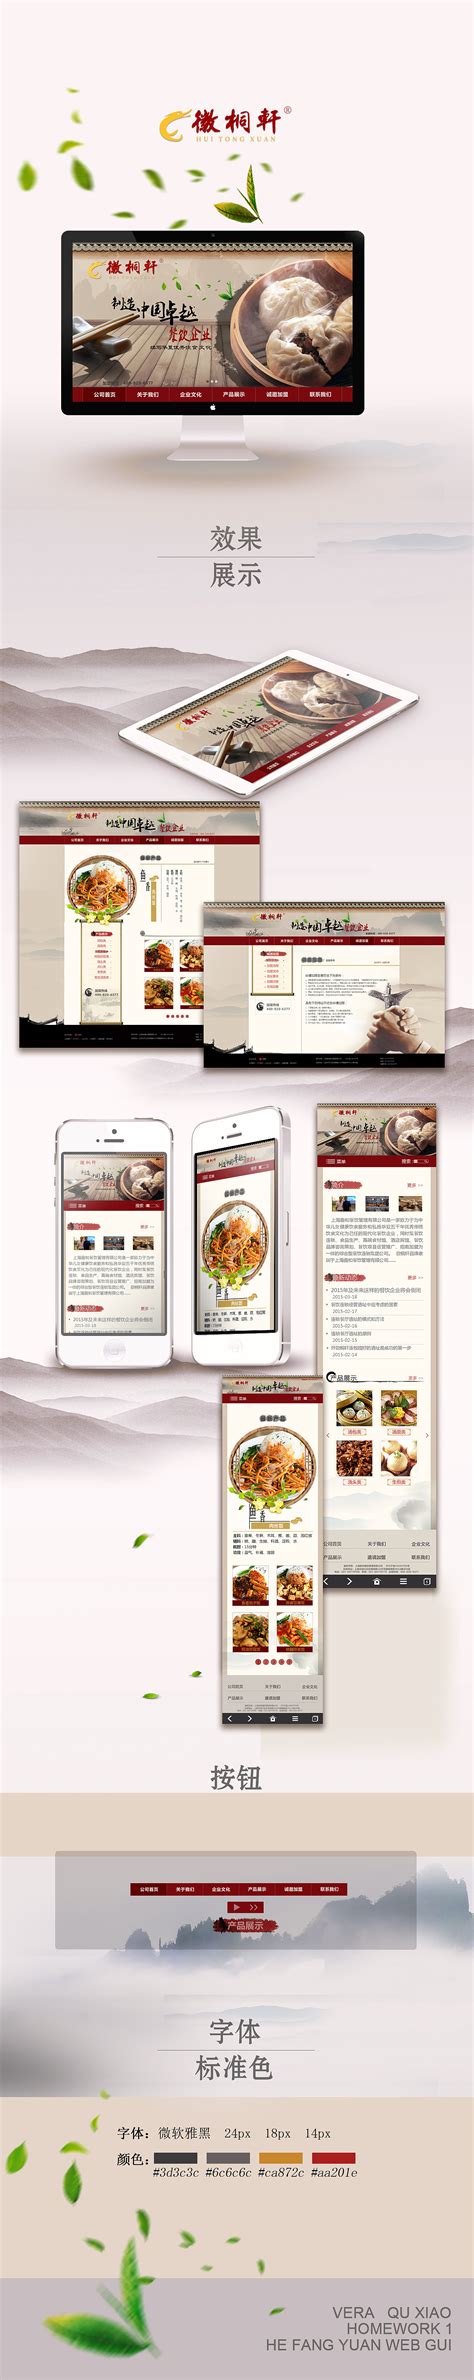 响应式美食网站模板_美食小吃网站源码下载-易优CMS